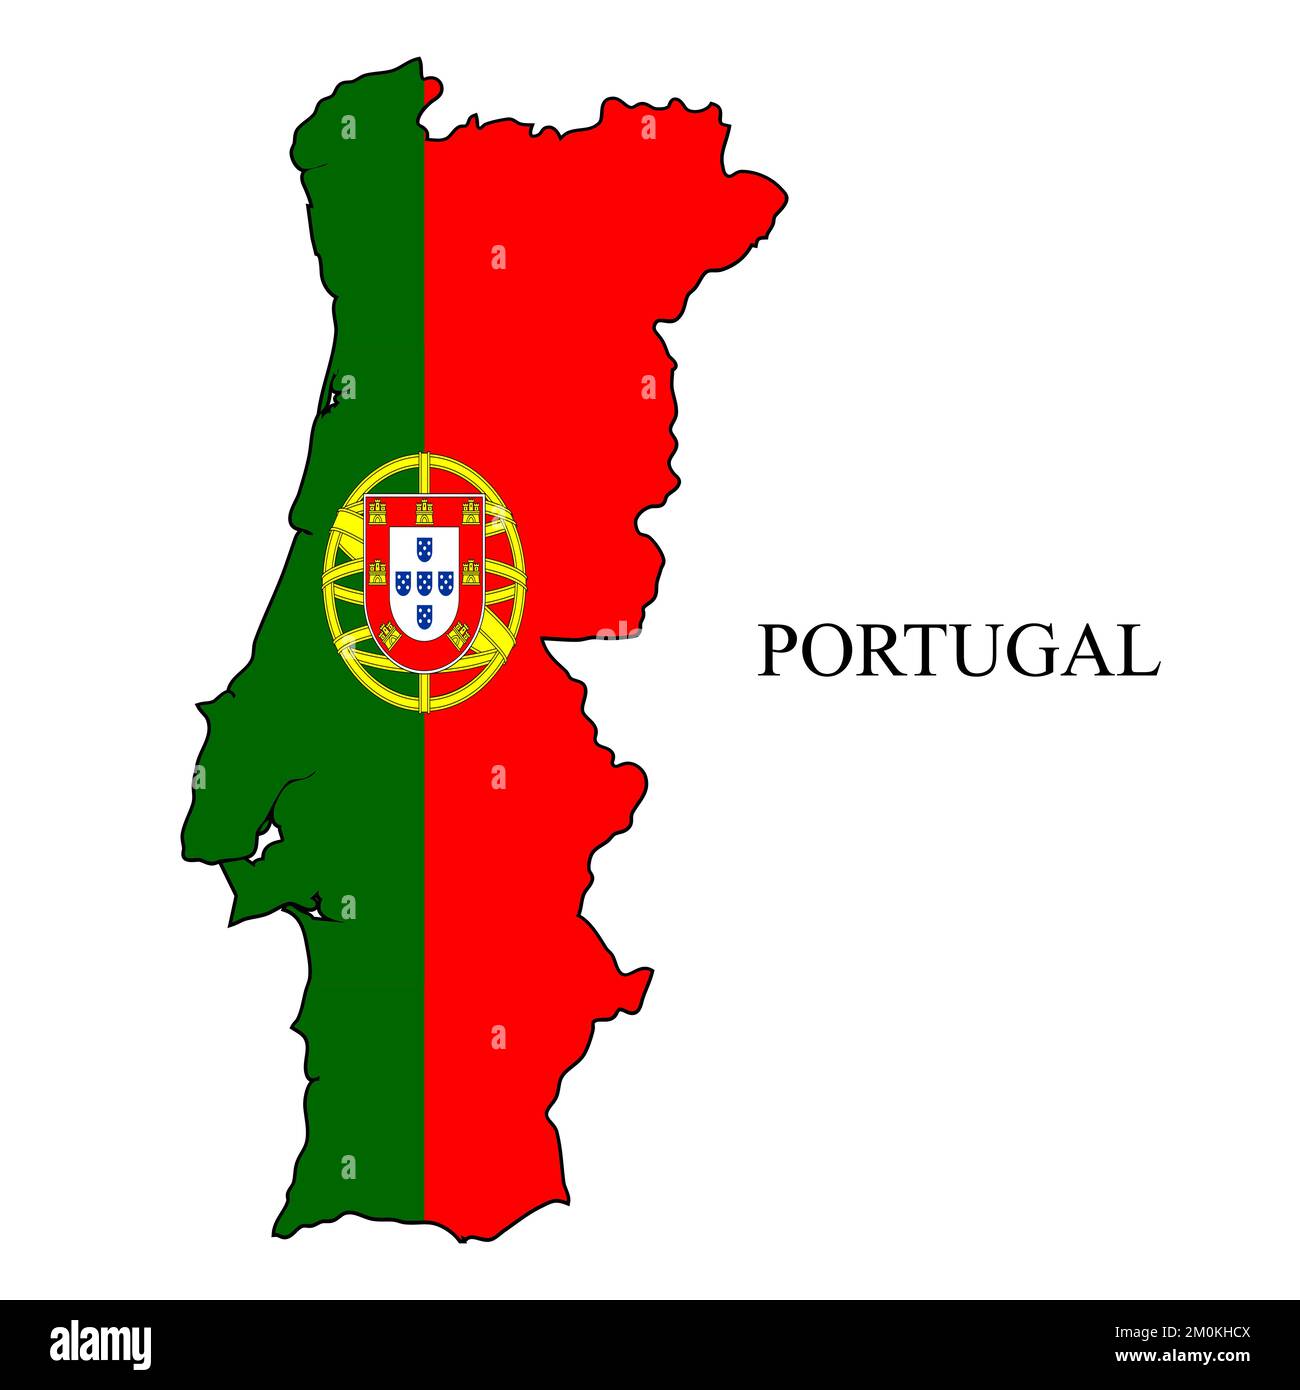 Illustration vectorielle de la carte du Portugal. Économie mondiale. Pays célèbre. Europe du Sud. Europe. Illustration de Vecteur